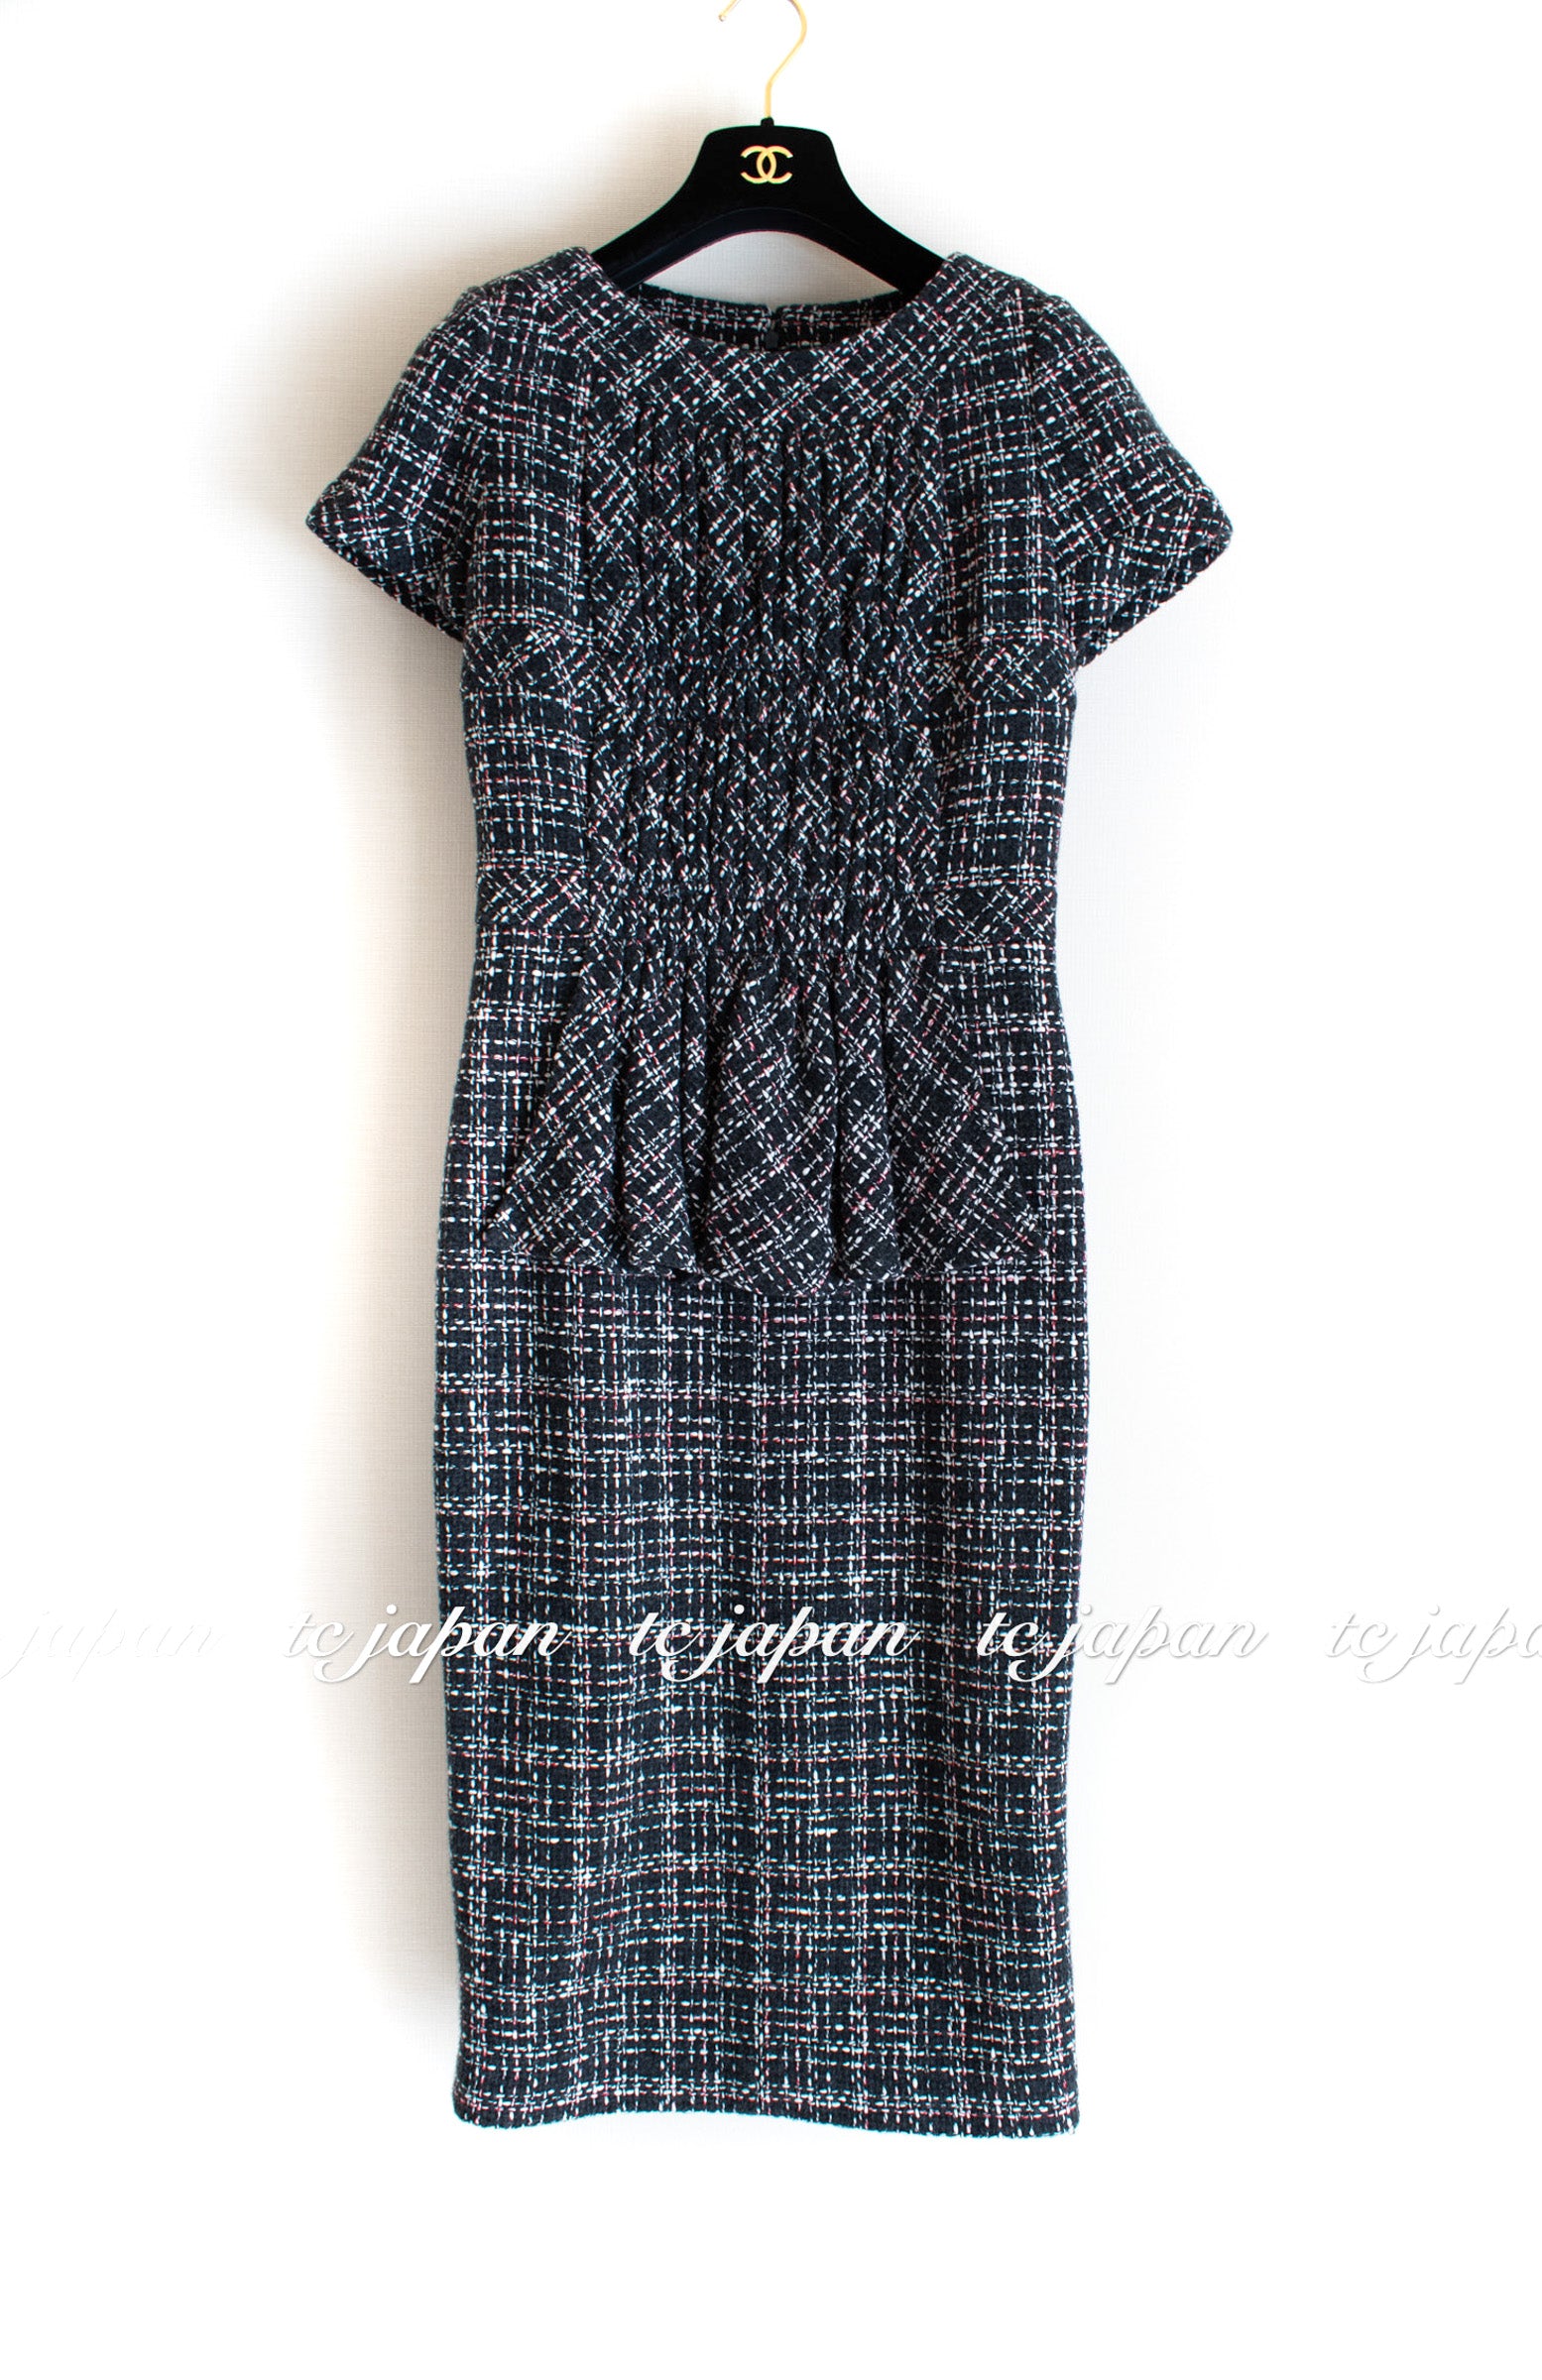 シャネル チャコールグレー ウール ツイード ワンピース CHANEL 16B Charcoal Gray Tweed Dress – TC JAPAN